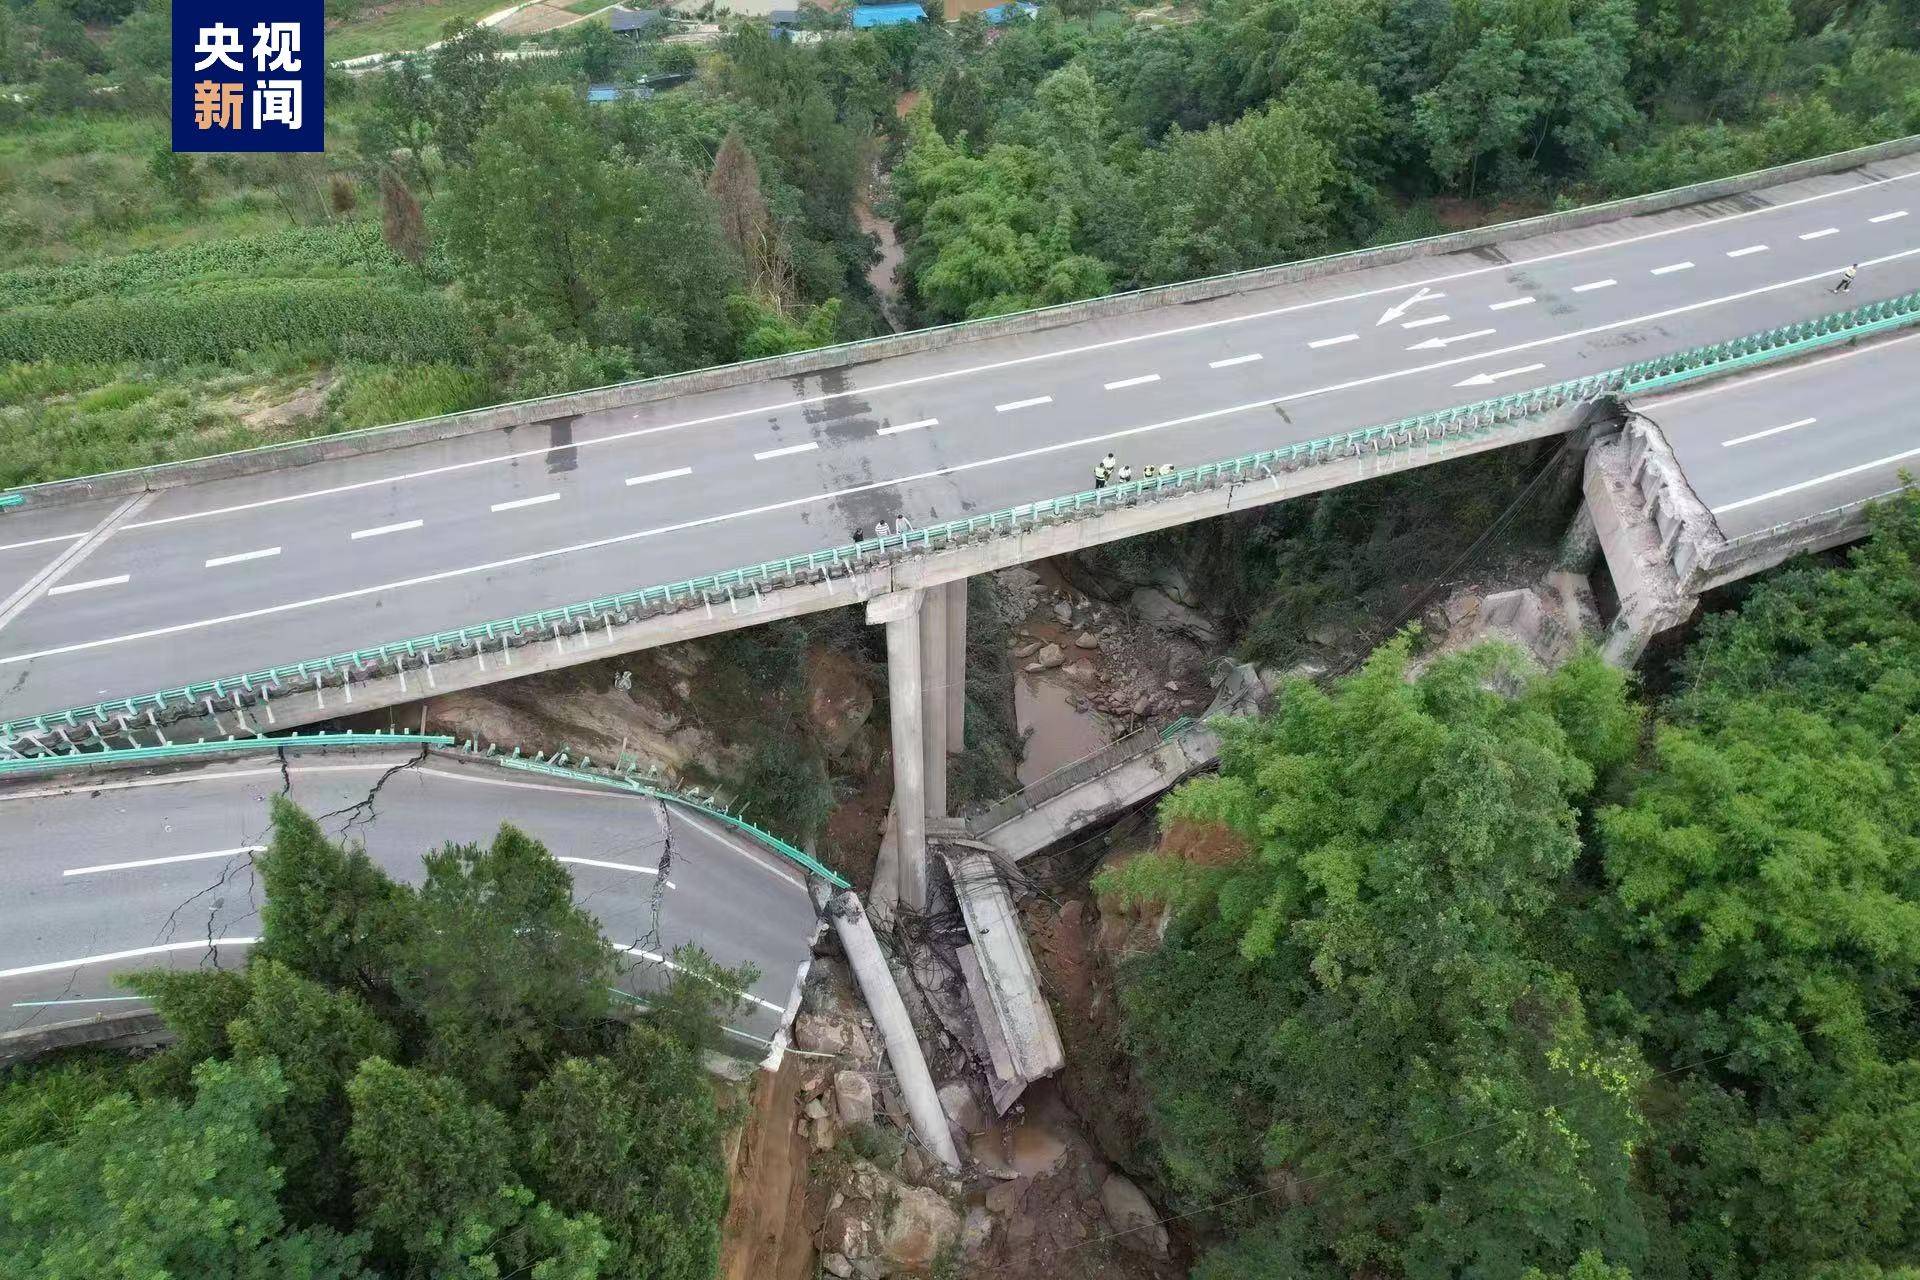 黑龙江一高速桥梁塌陷 两车坠落-荔枝网